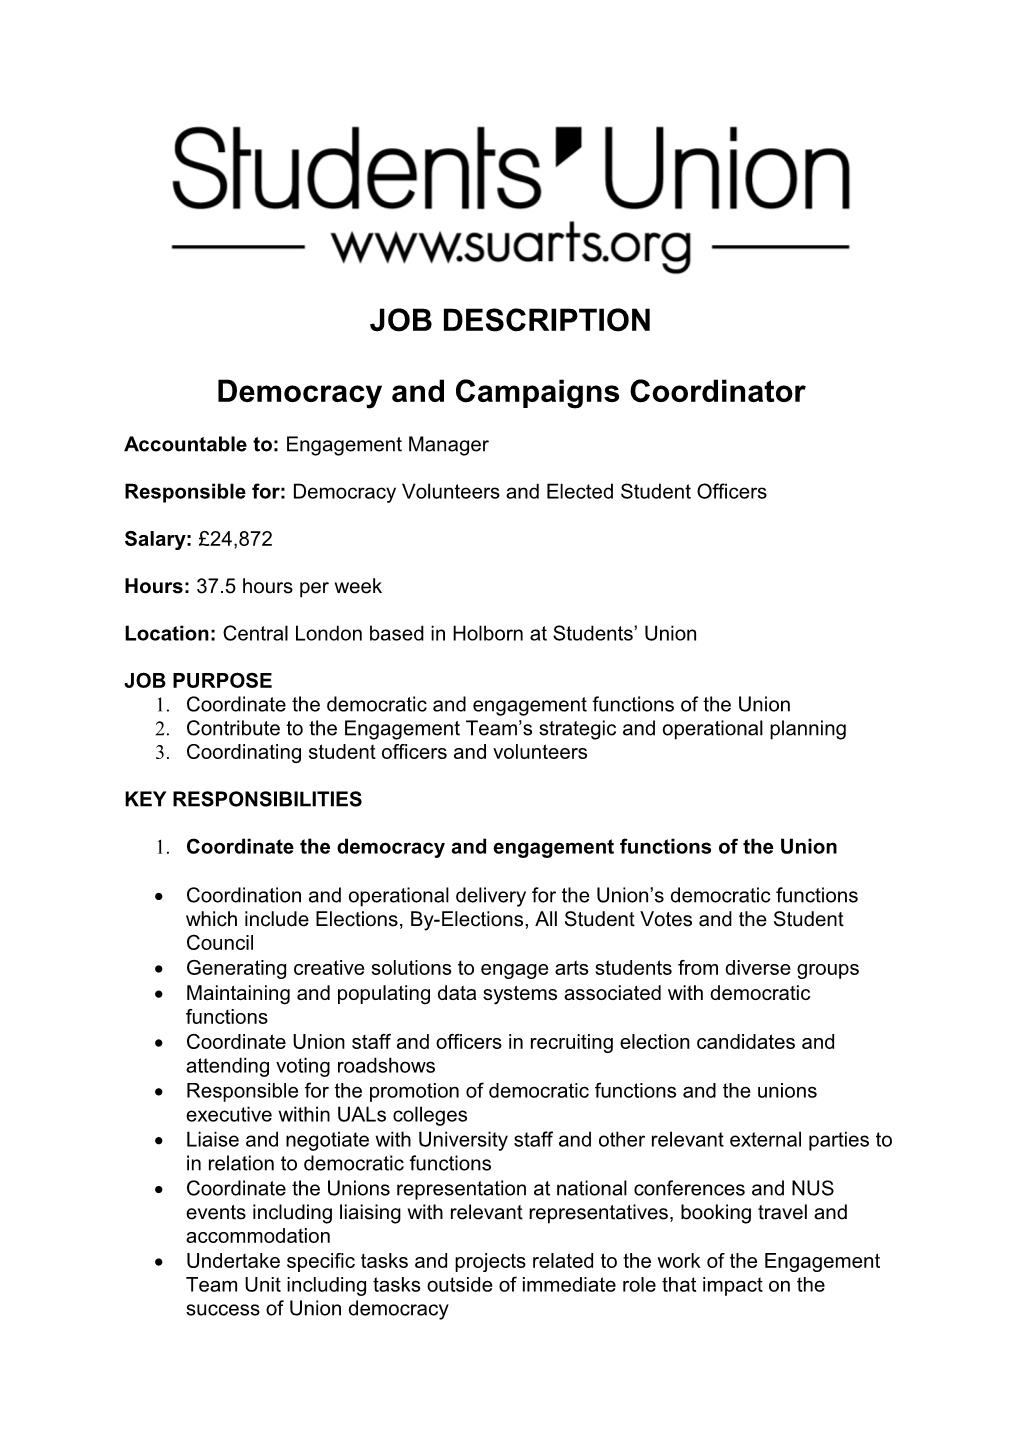 Democracy and Campaigns Coordinator